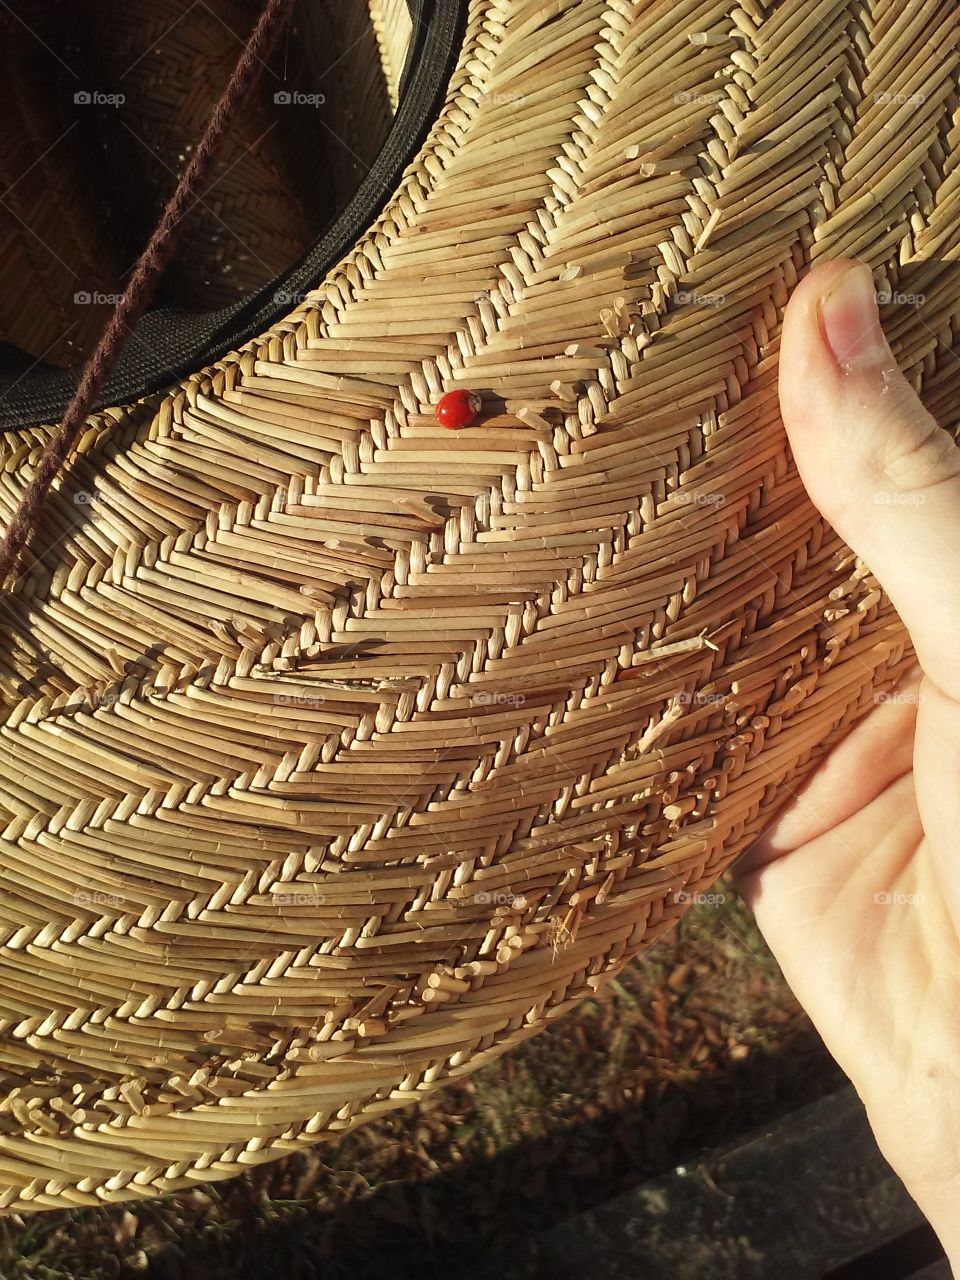 A lady bug on my hat. :)